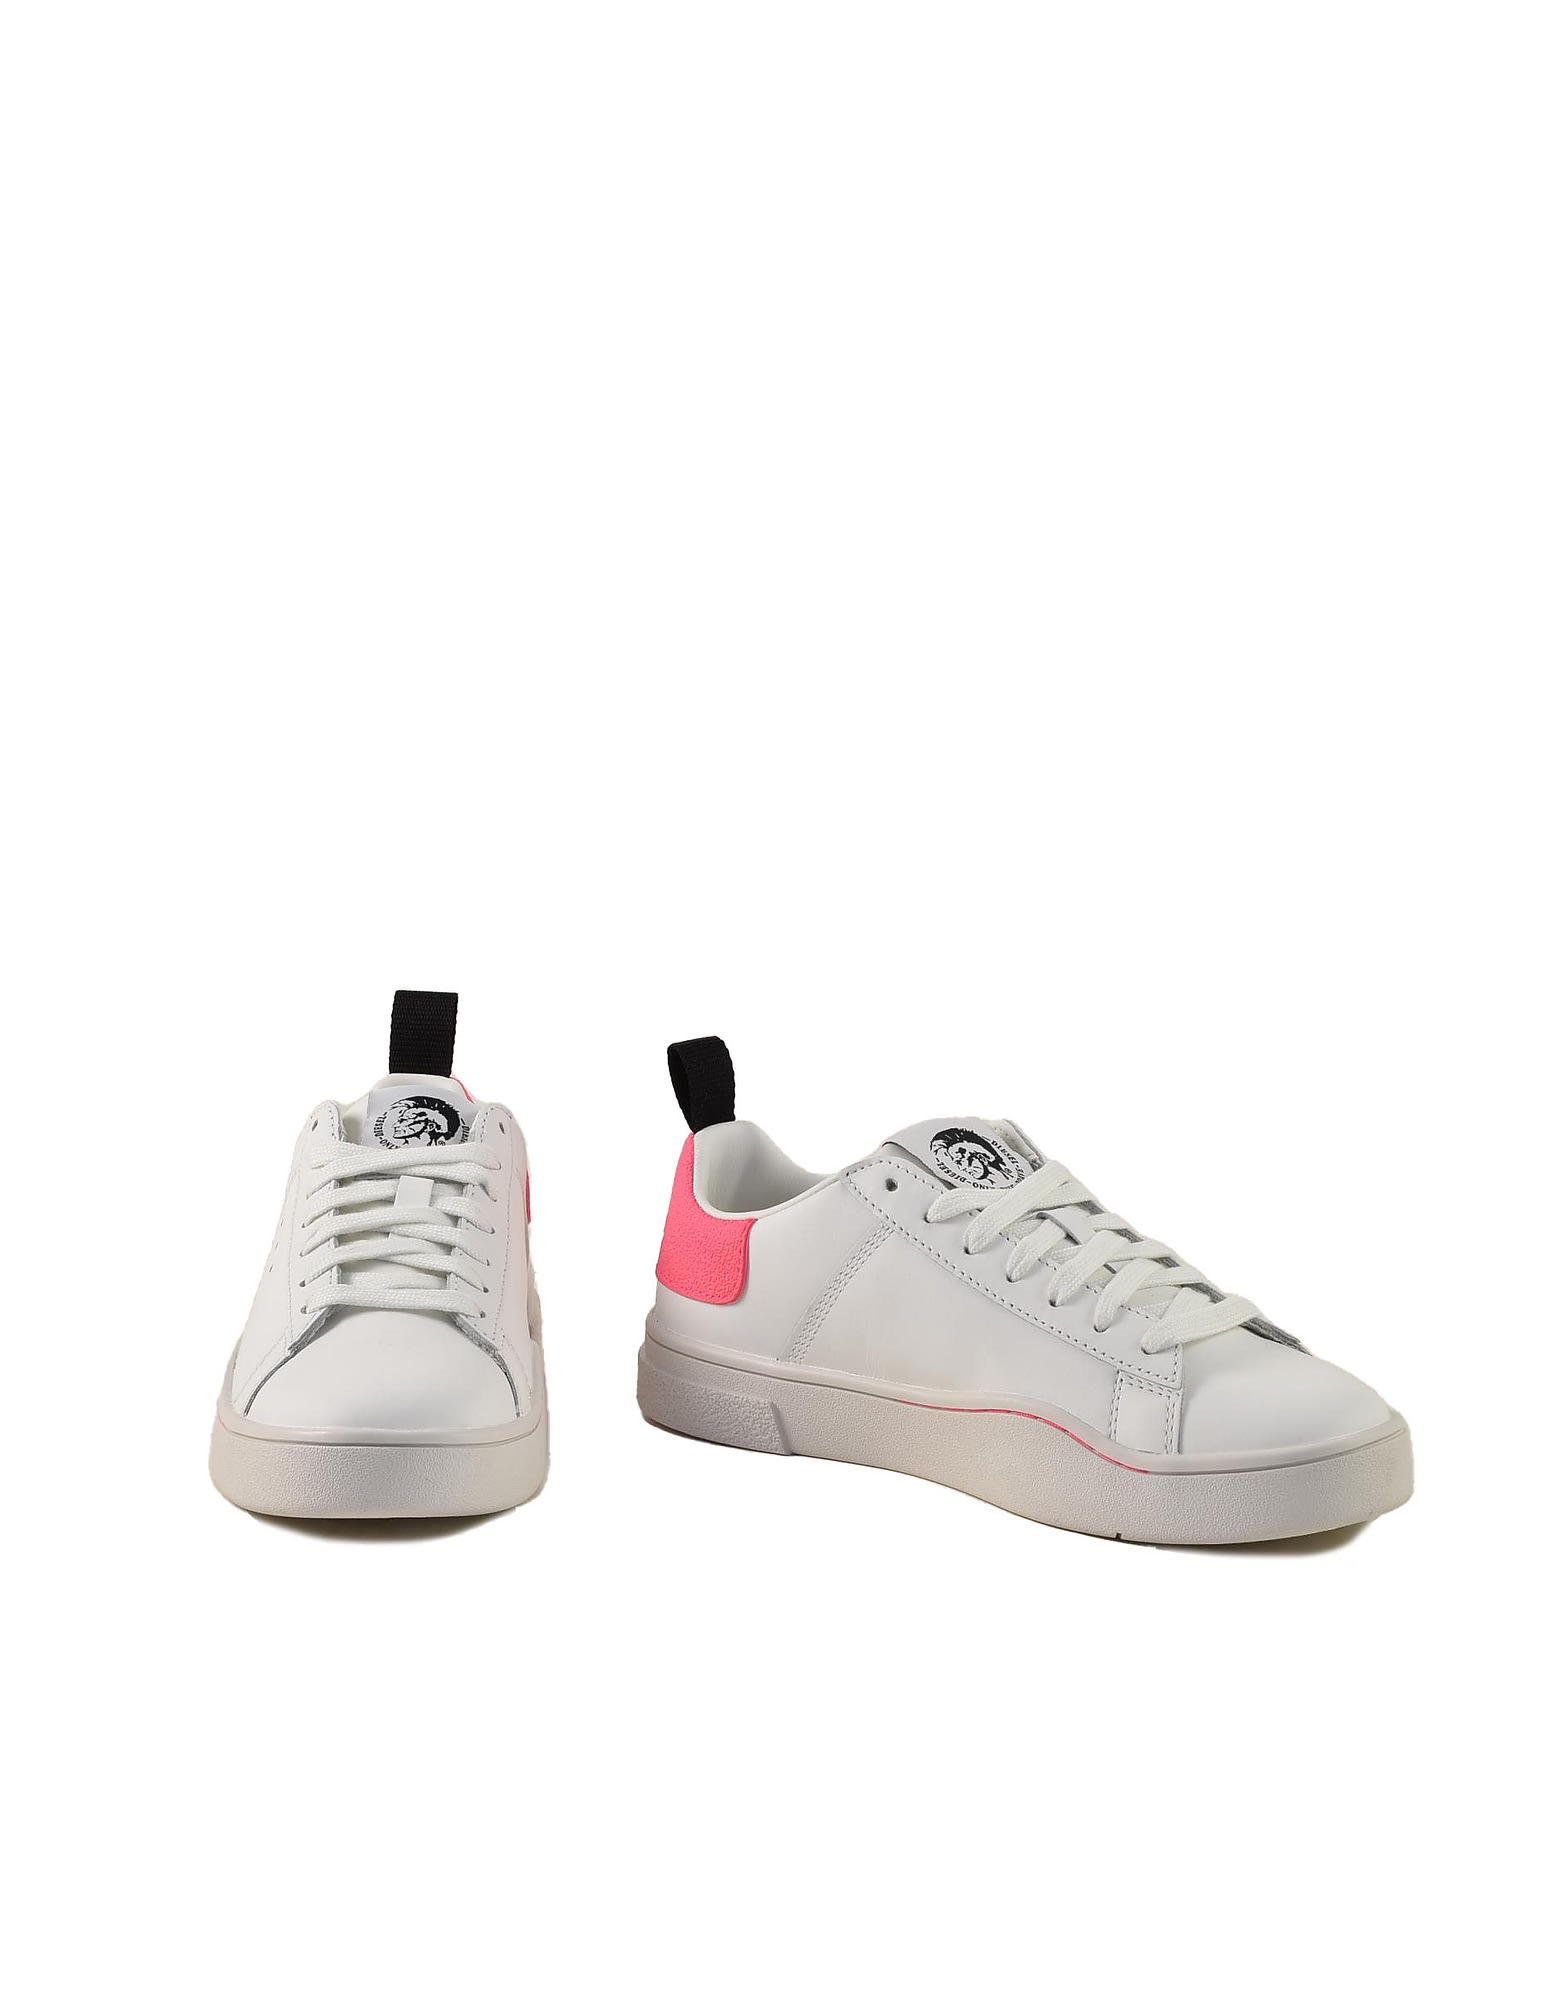 Diesel Womens White / Pink Sneakers